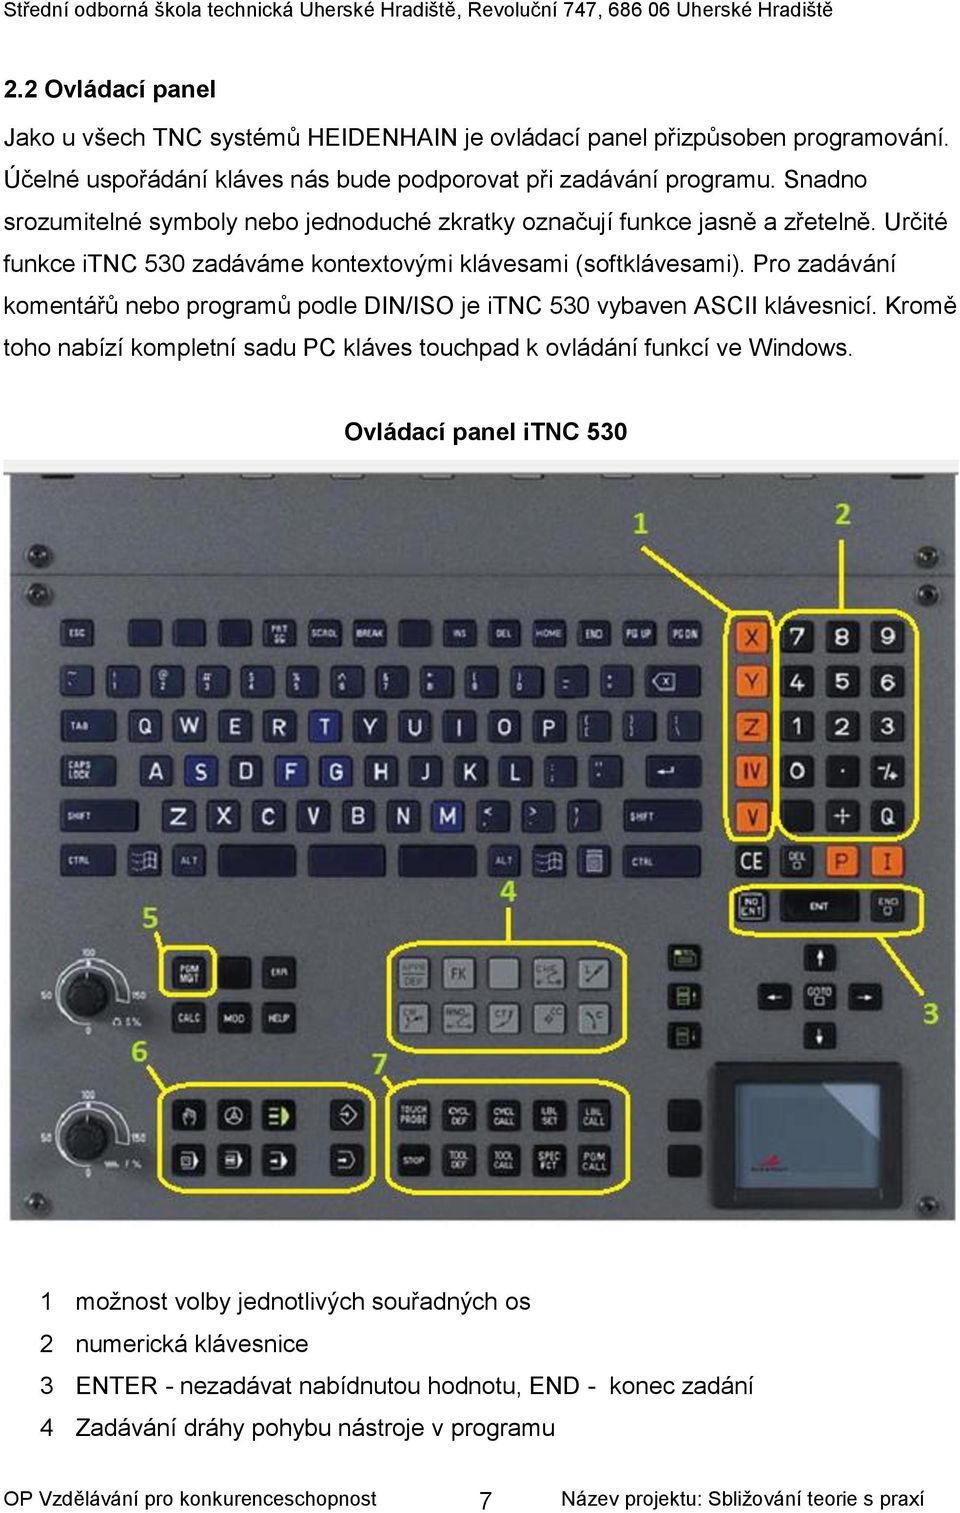 Pro zadávání komentářů nebo programů podle DIN/ISO je itnc 530 vybaven ASCII klávesnicí. Kromě toho nabízí kompletní sadu PC kláves touchpad k ovládání funkcí ve Windows.